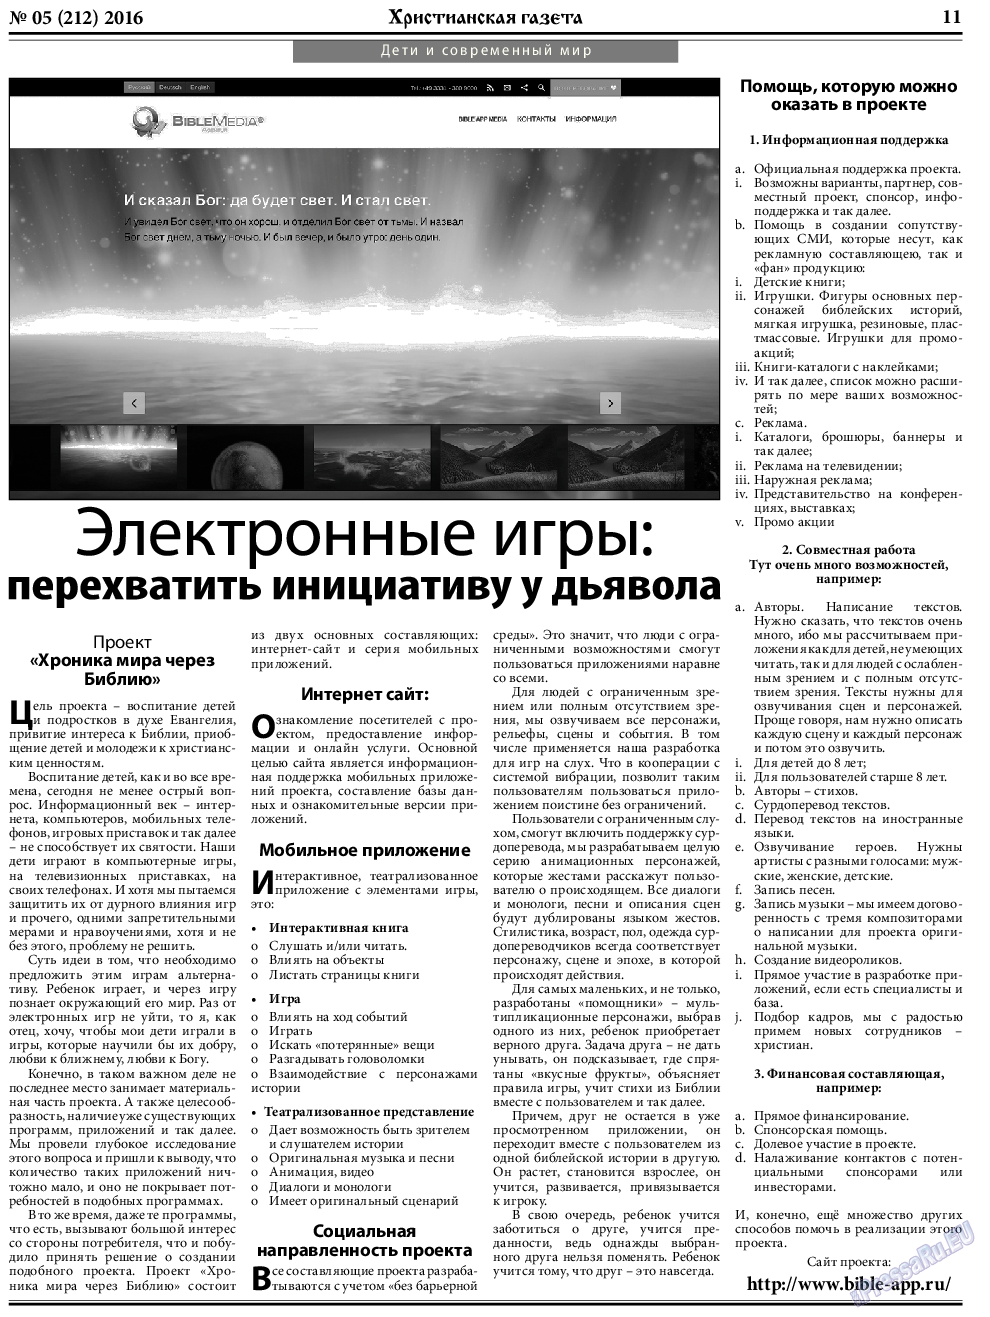 Христианская газета, газета. 2016 №5 стр.11